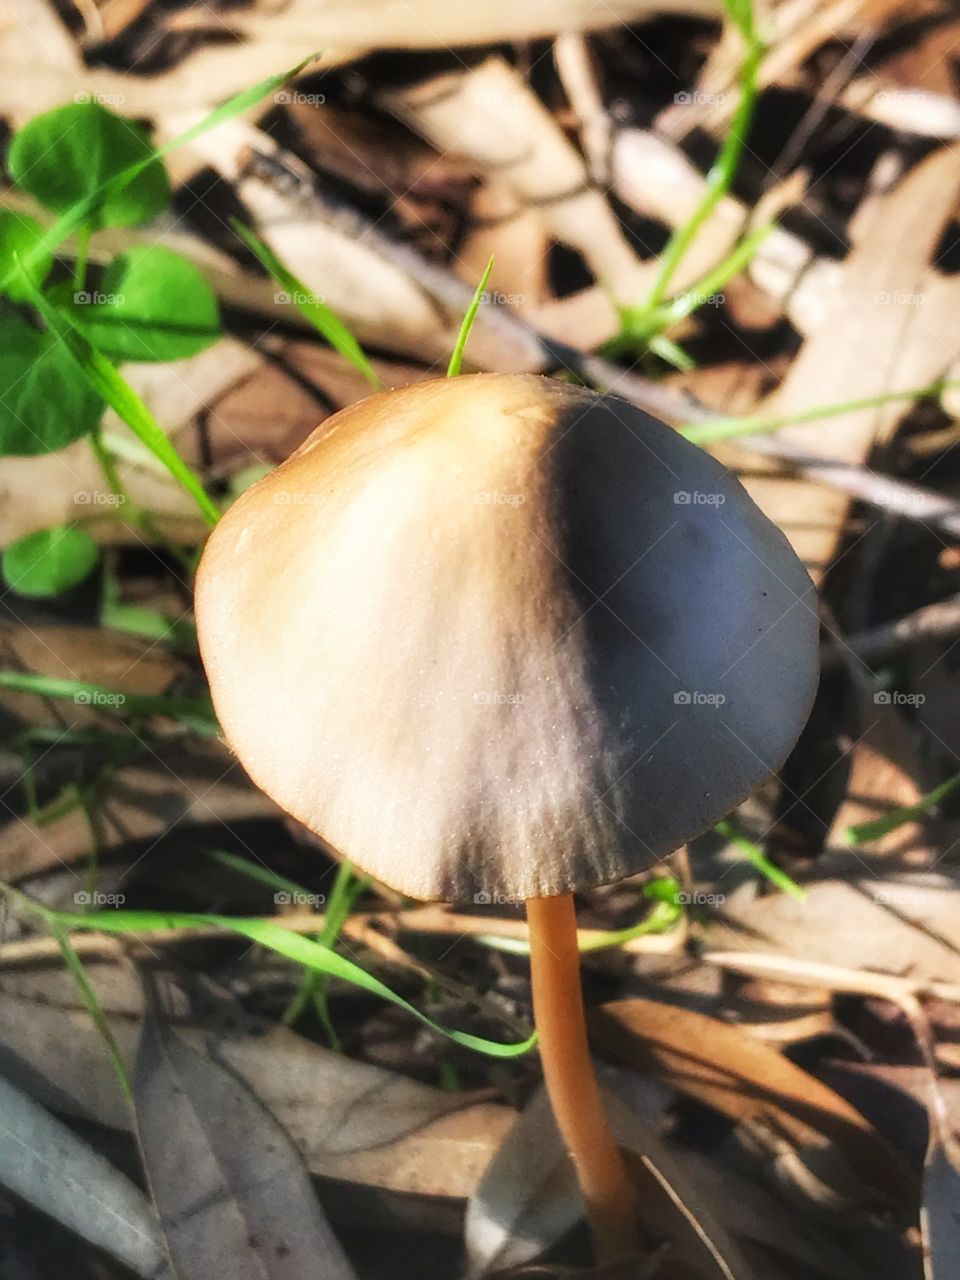 Beautiful mushroom .